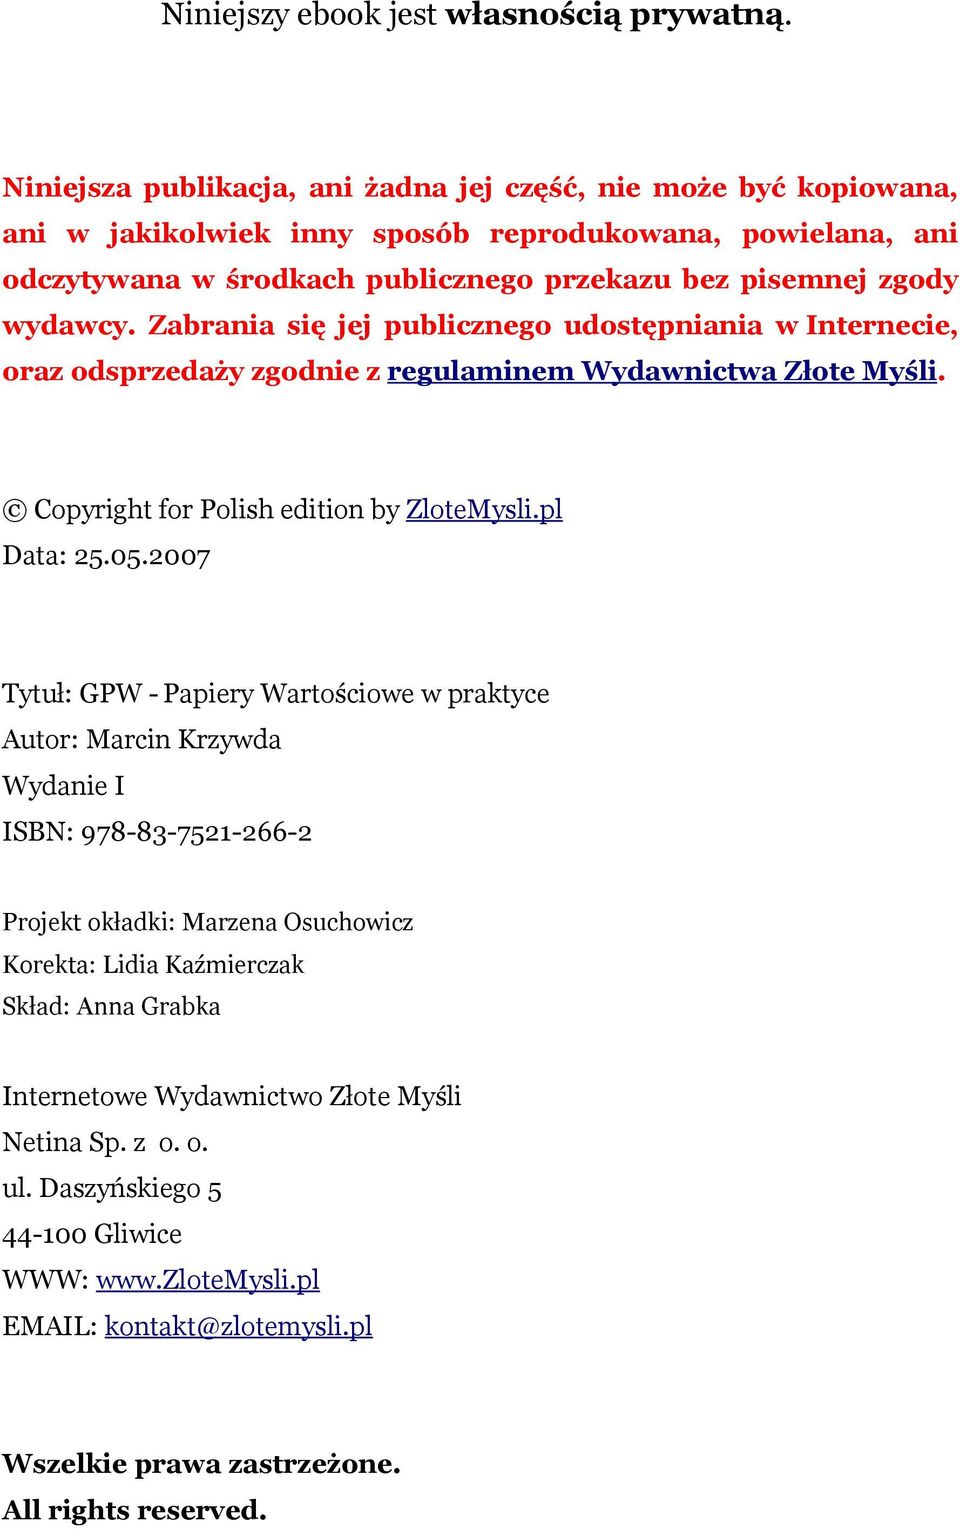 Zabrania się jej publicznego udostępniania w Internecie, oraz odsprzedaży zgodnie z regulaminem Wydawnictwa Złote Myśli. Copyright for Polish edition by ZloteMysli.pl Data: 25.05.